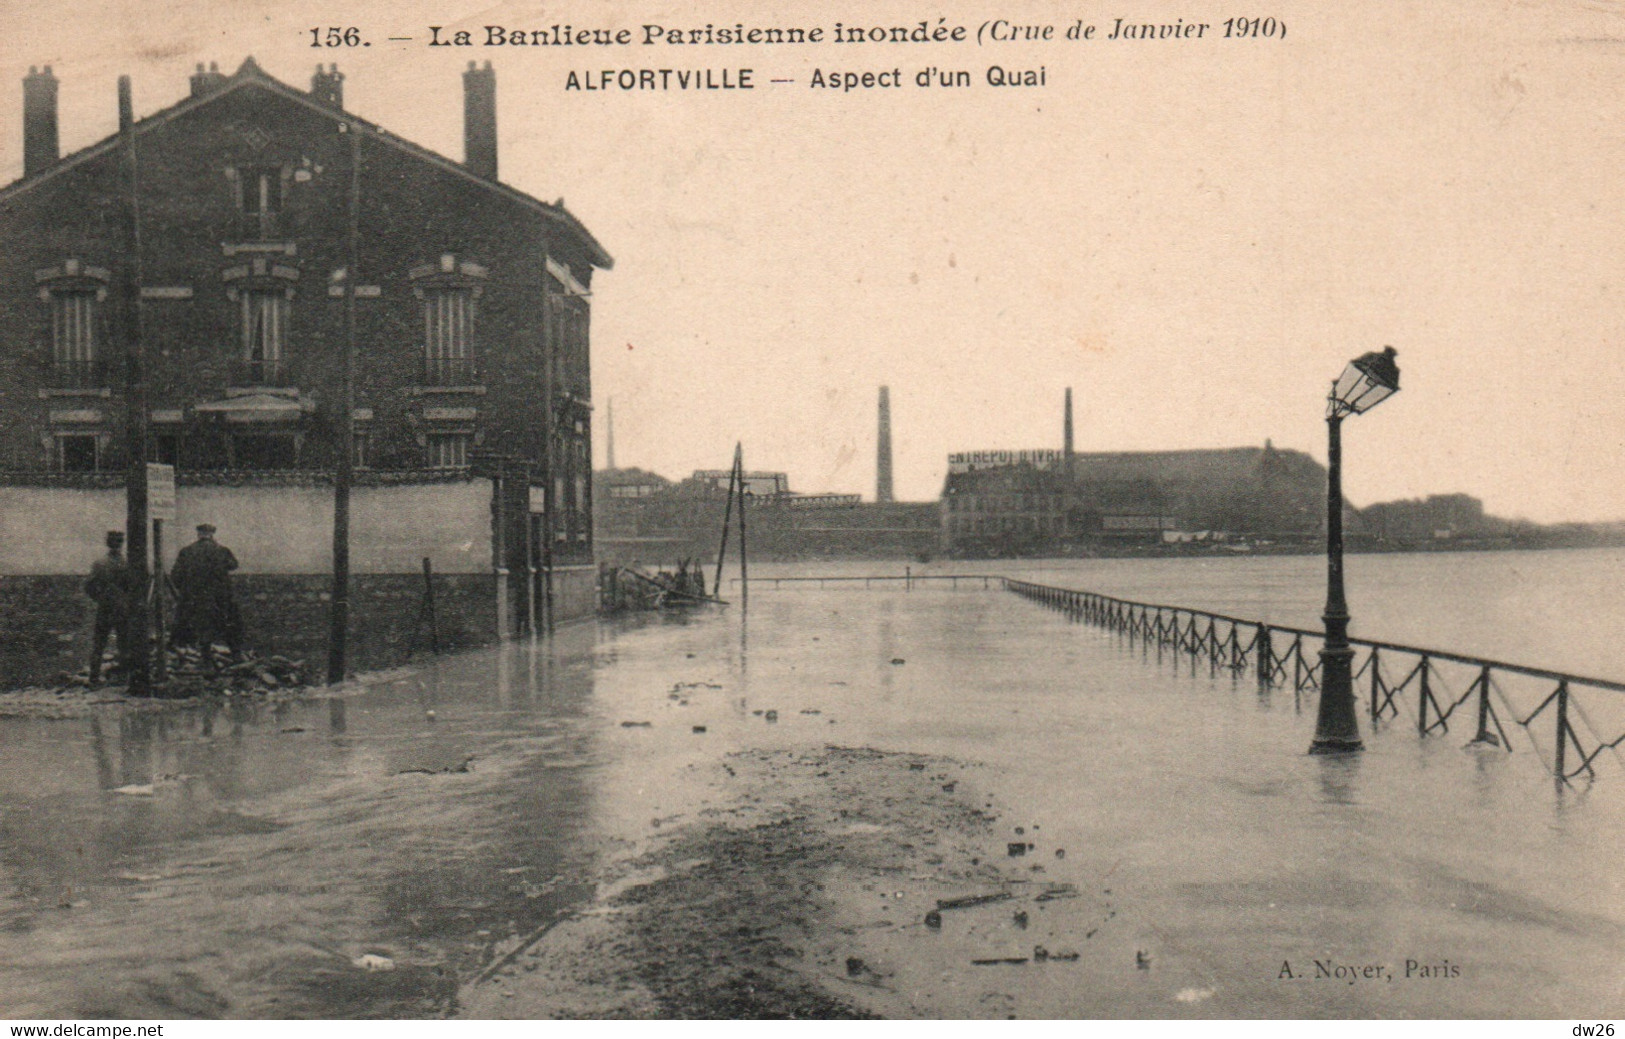 La Banlieue Parisienne Inondée: Crue De Janvier 1910 - Alfortville: Aspect D'un Quai - Carte Noyer N° 156 Non Circulée - Overstromingen